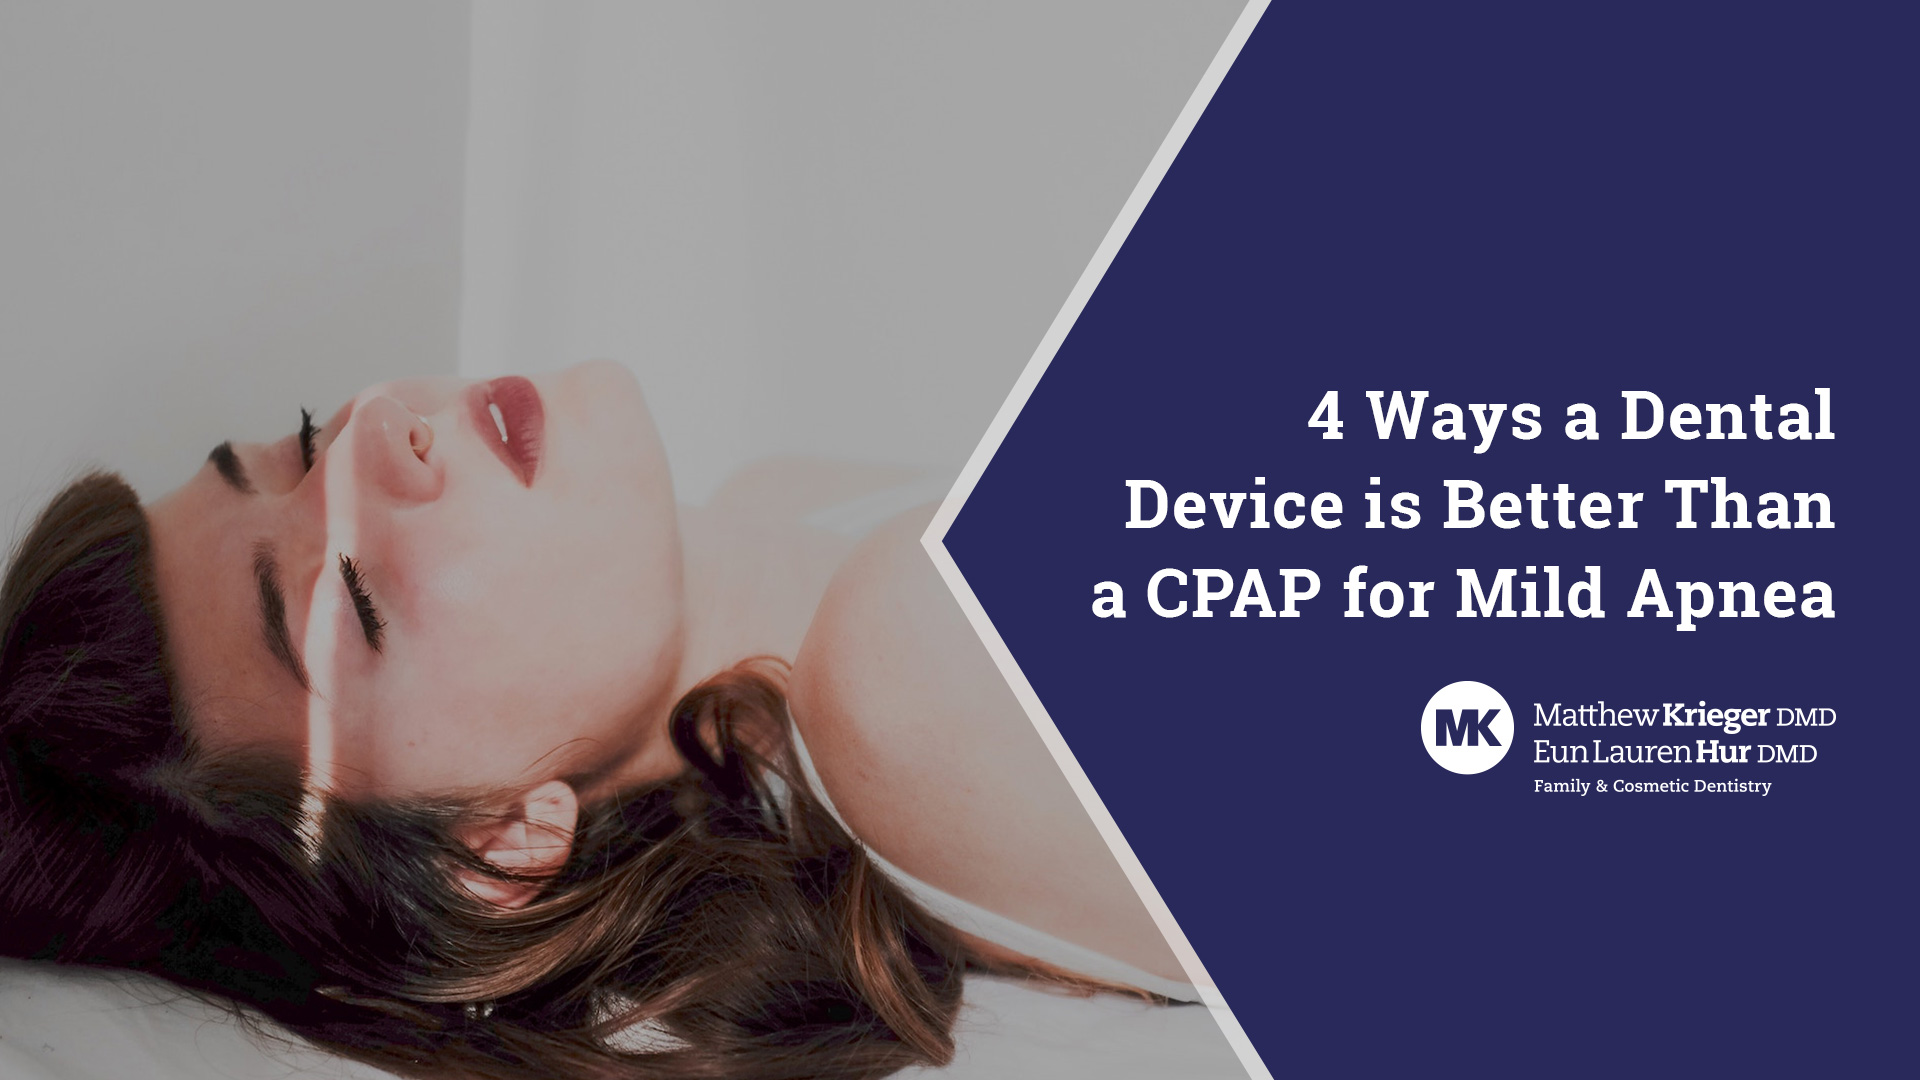 4 Ways a Dental is Better Than a CPAP for Mild Apnea - Matthew Krieger DMD